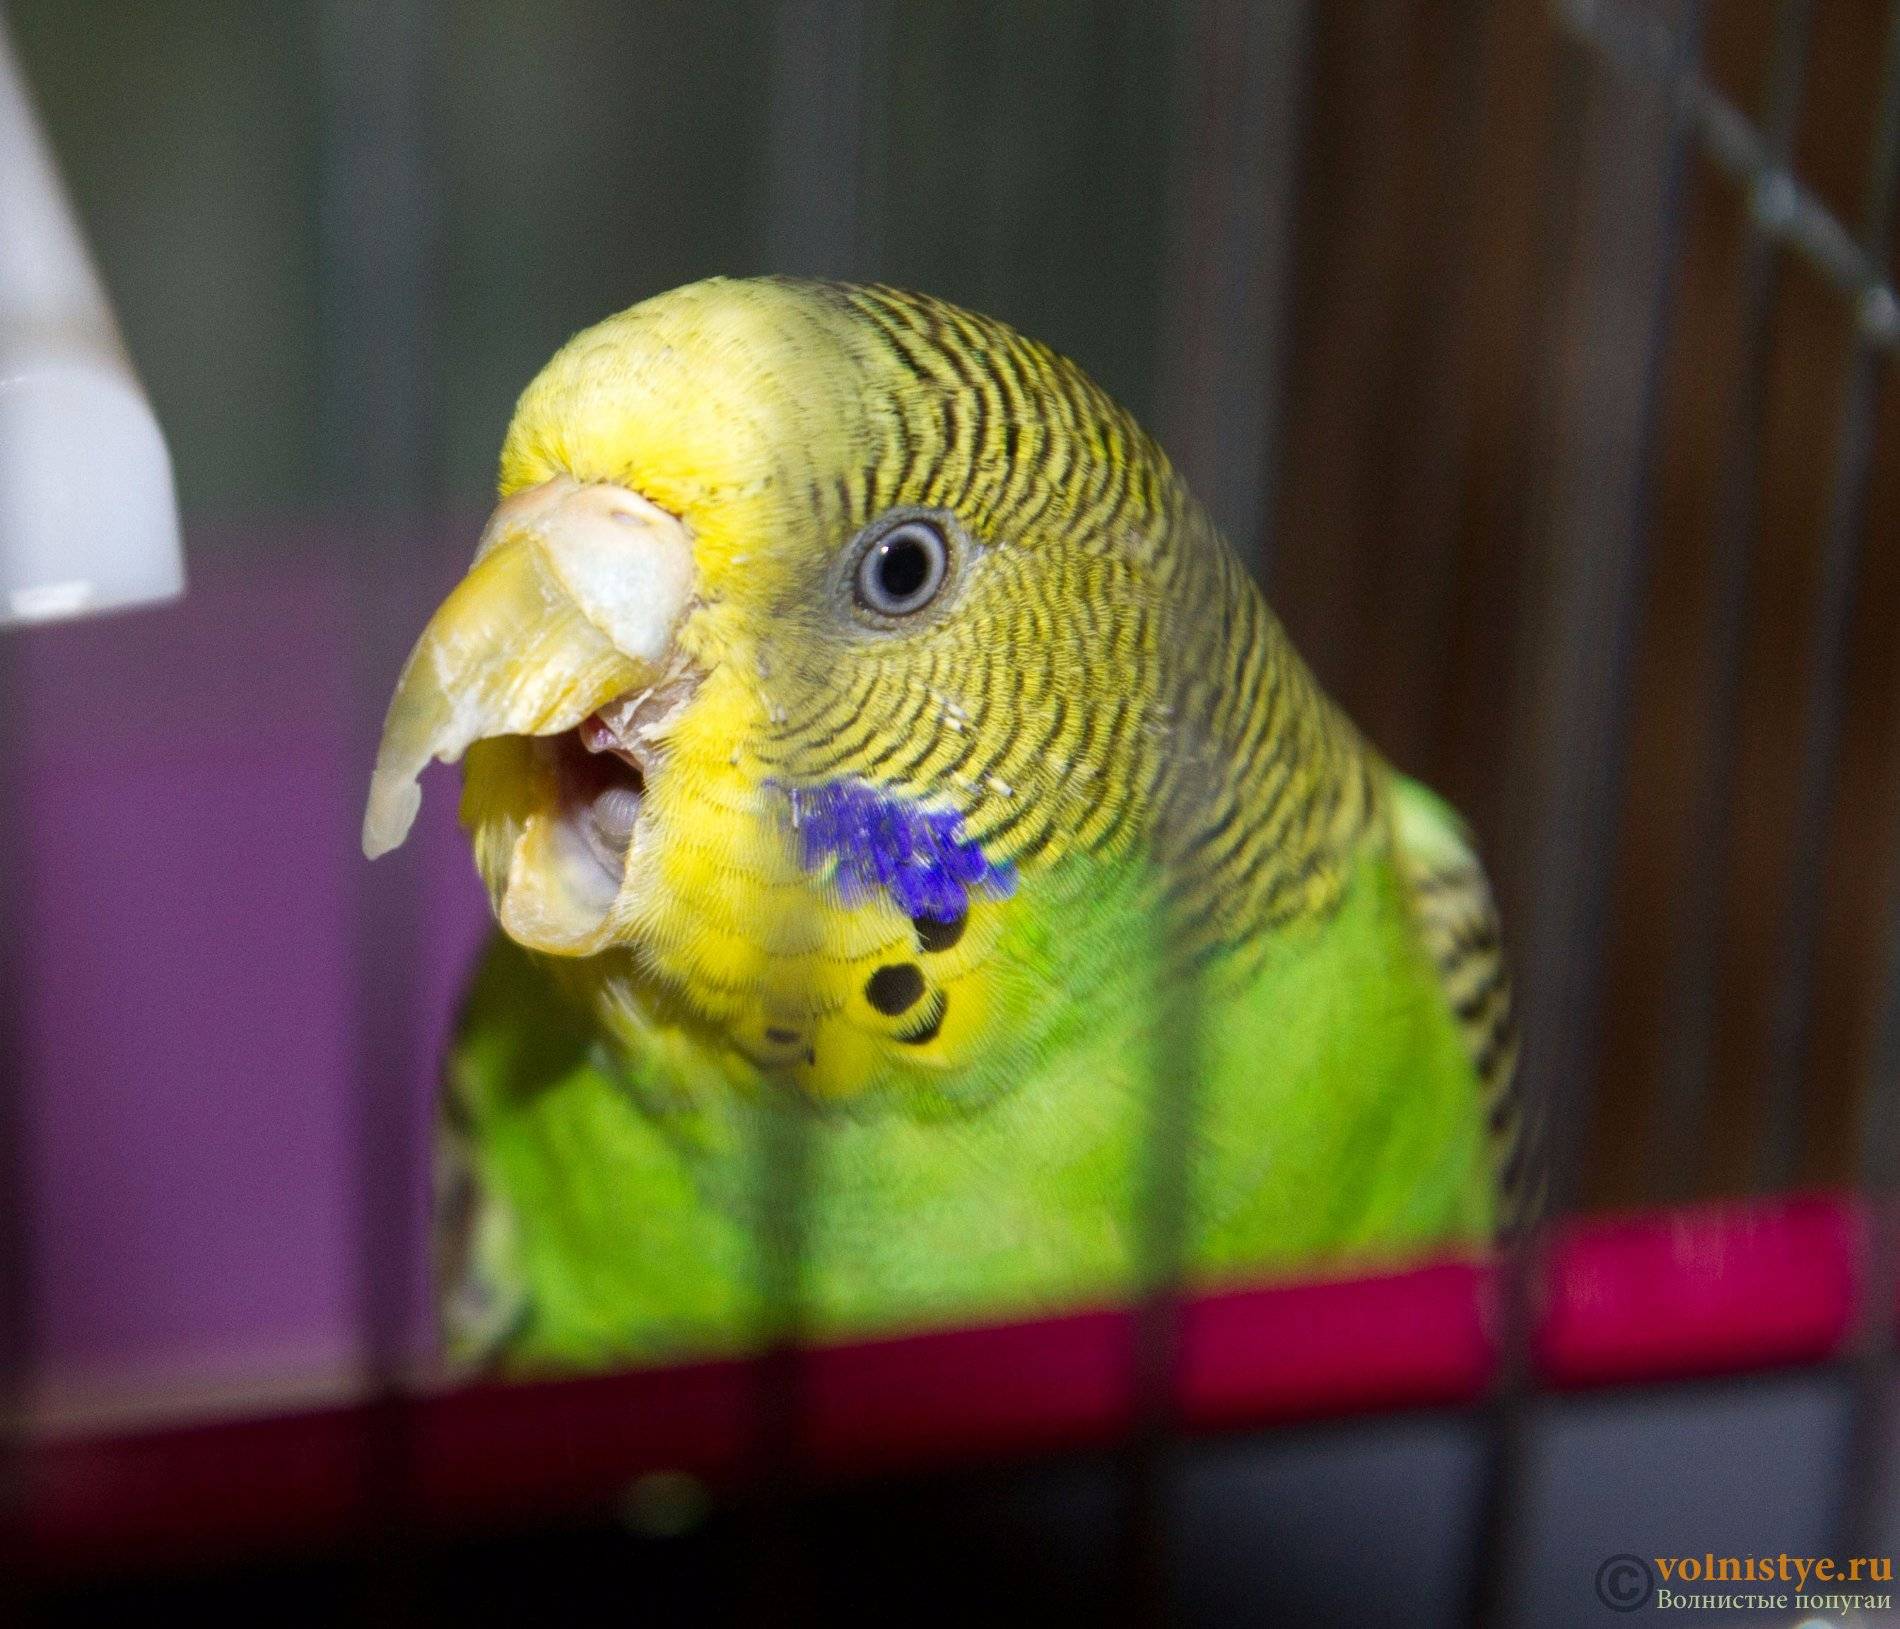 Почему волнистый попугай дрожит?